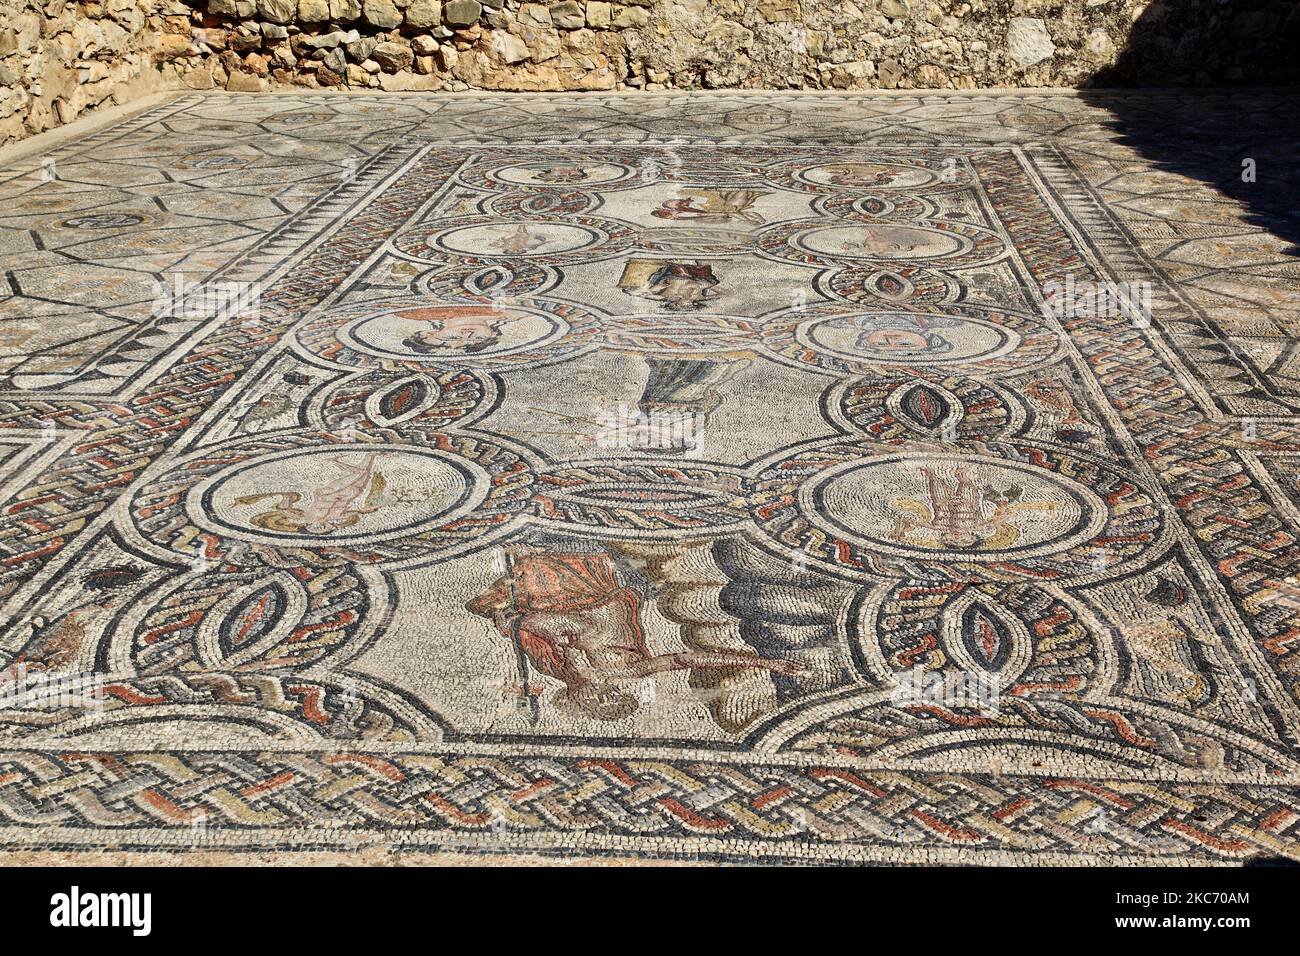 Mosaico nell'antica città romana di Volubilis a Meknes, Marocco, Africa. Volubilis è una città romana parzialmente scavata costruita nel 3rd ° secolo AC in poi come un insediamento fenicio (e più tardi cartaginese). Il sito è stato scavato e ha rivelato molti mosaici fini, tra cui alcuni dei più importanti edifici pubblici e case di alto livello sono stati restaurati o ricostruiti. Oggi è un sito patrimonio dell'umanità dell'UNESCO, considerato "un esempio eccezionalmente ben conservato di una grande città coloniale romana ai margini dell'Impero". (Foto di Creative Touch Imaging Ltd./NurPhoto) Foto Stock